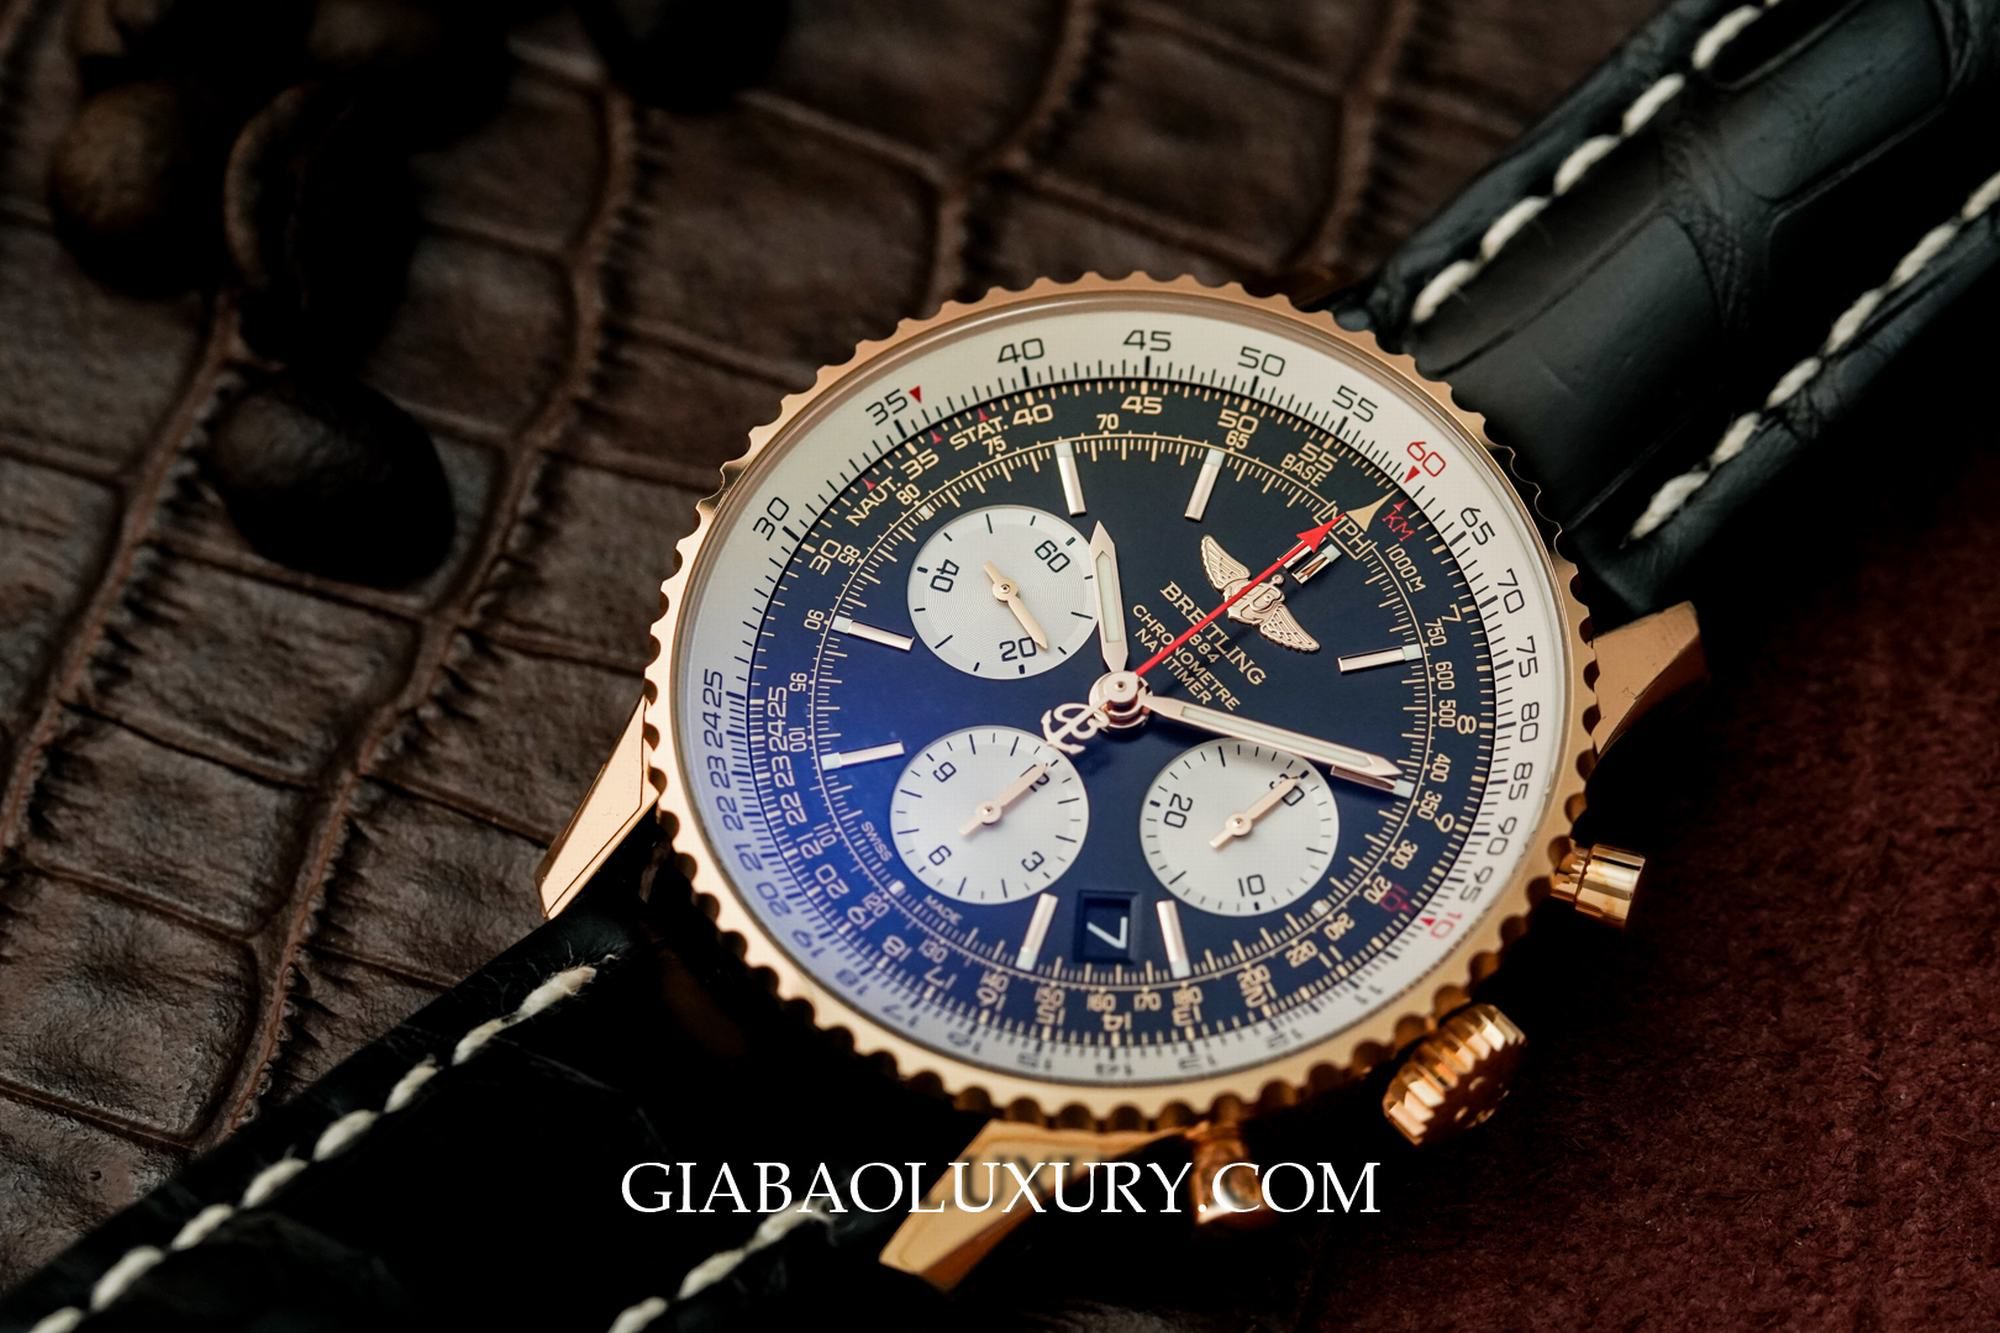 Thu mua đồng hồ Breitling chính hãng tại cửa hàng Gia Bảo Luxury